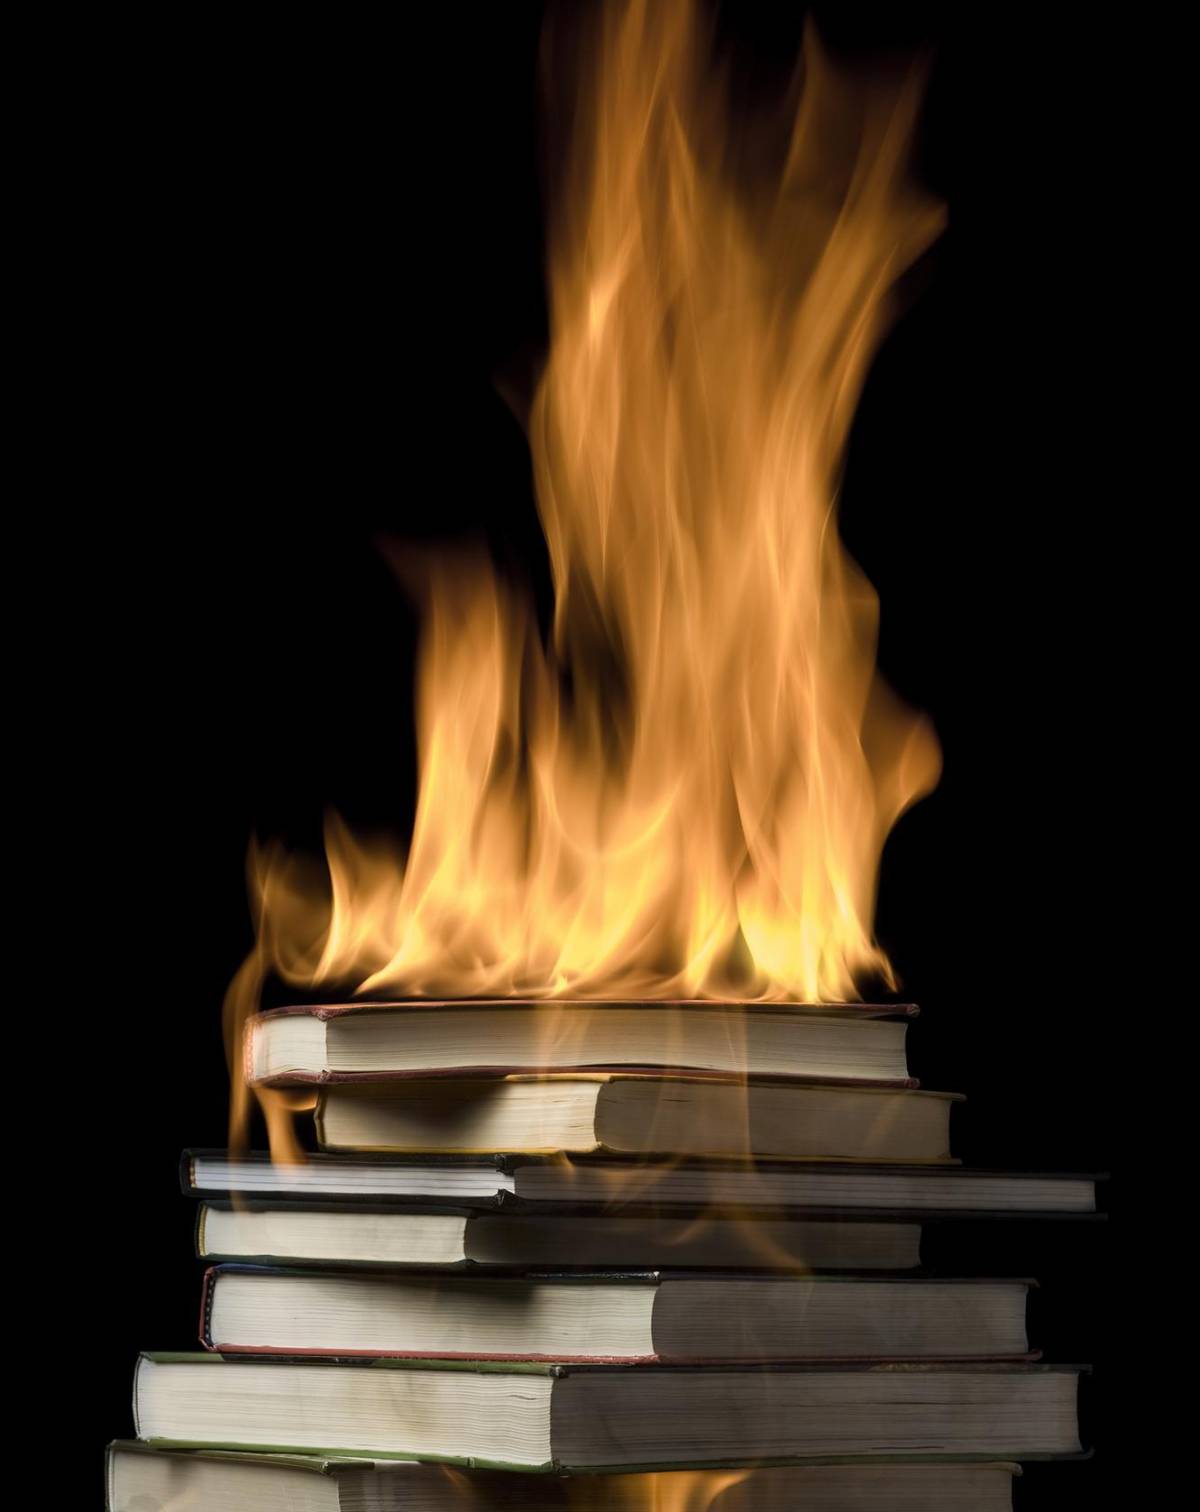 Bruciare libri scomodi Un vizio del potere antico quanto Roma